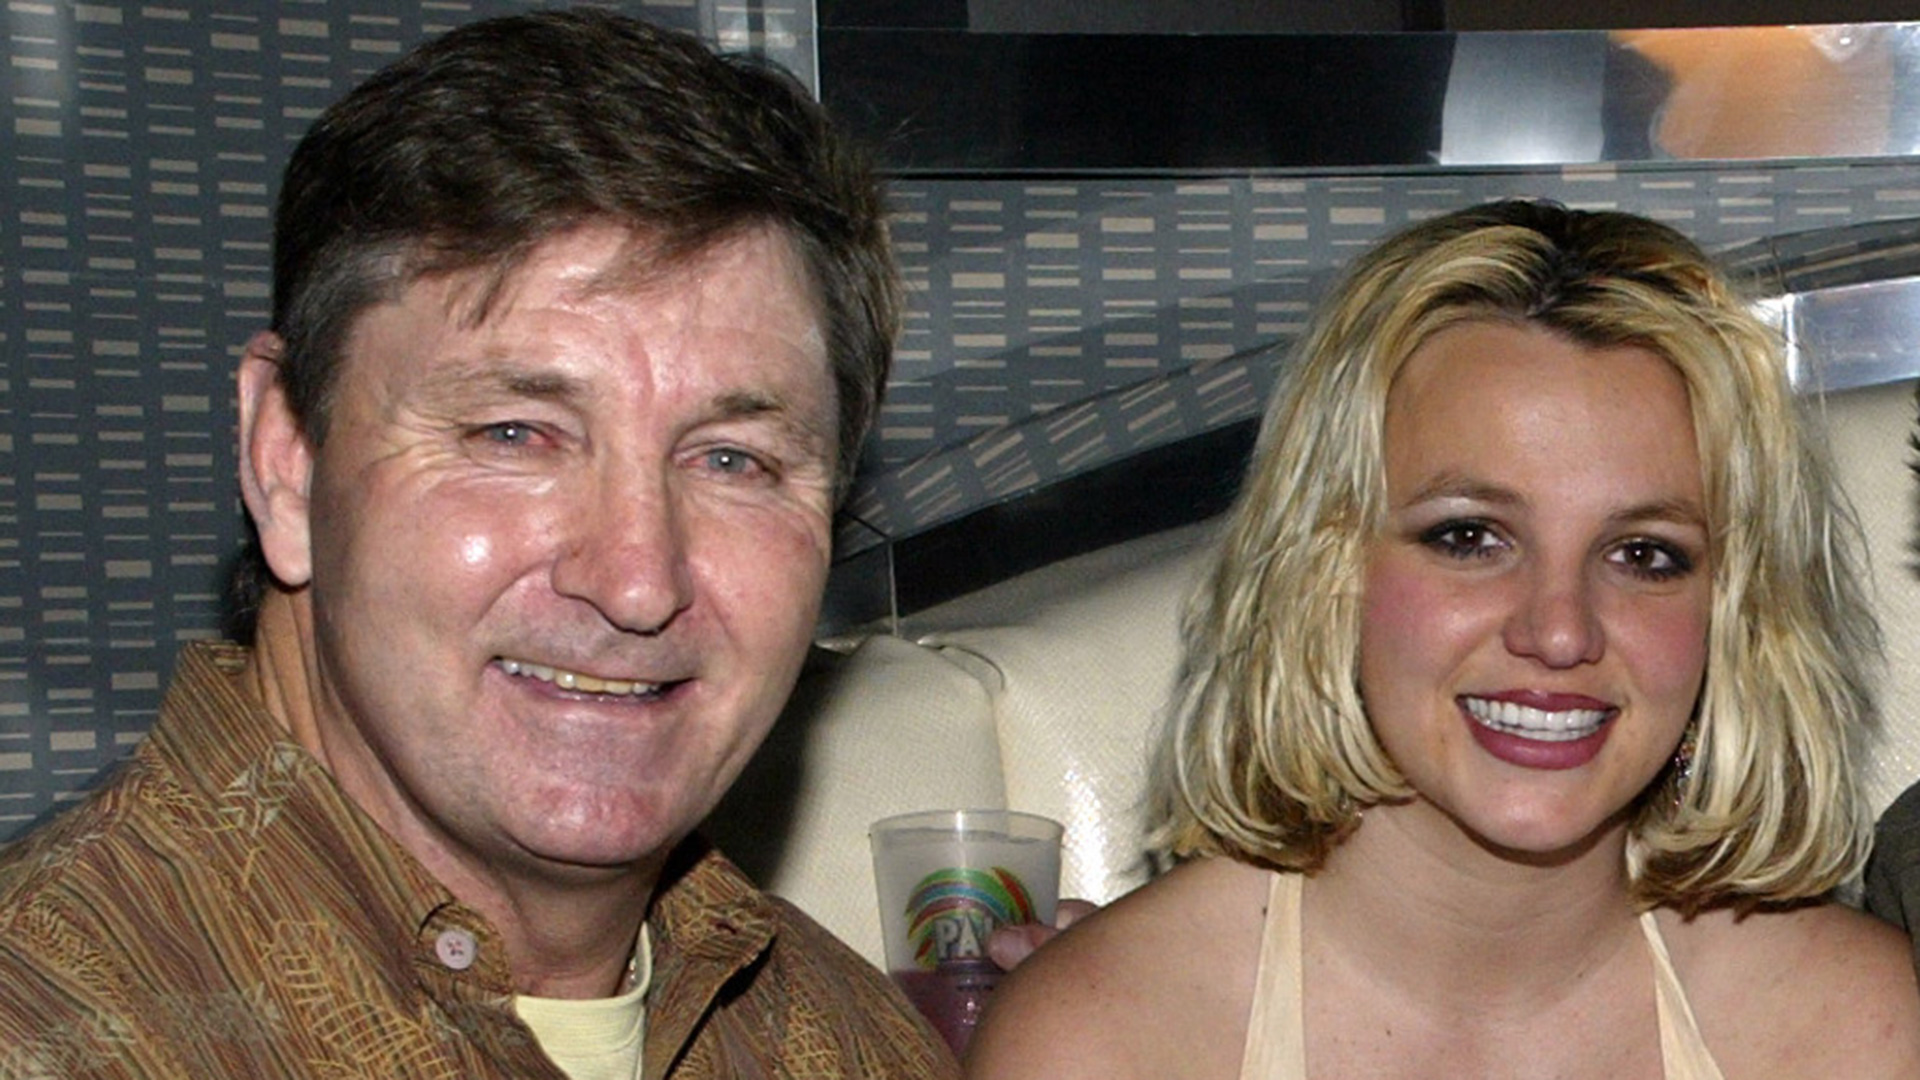 La escandalosa disputa entre Britney Spears y su padre en un documental desparejo